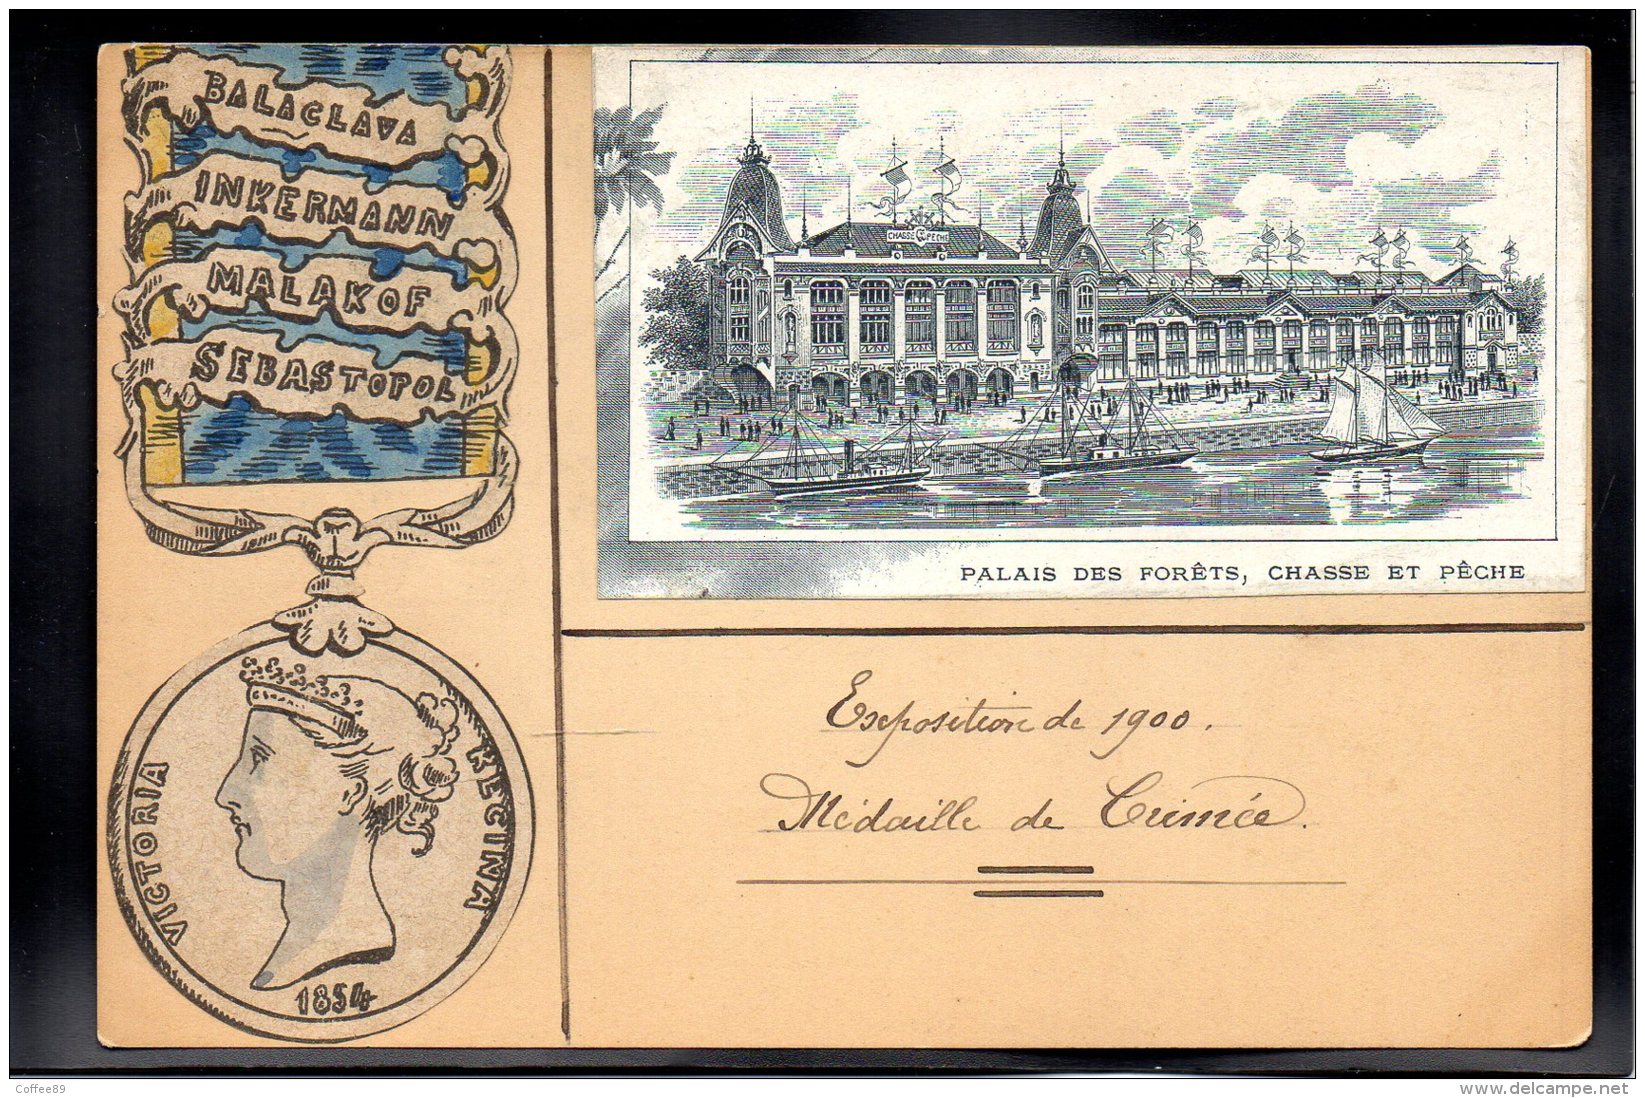 CRIMEE - Exposition De 1900 - Médaille De Crimée - Victoria Régina 1854 - Ucraina